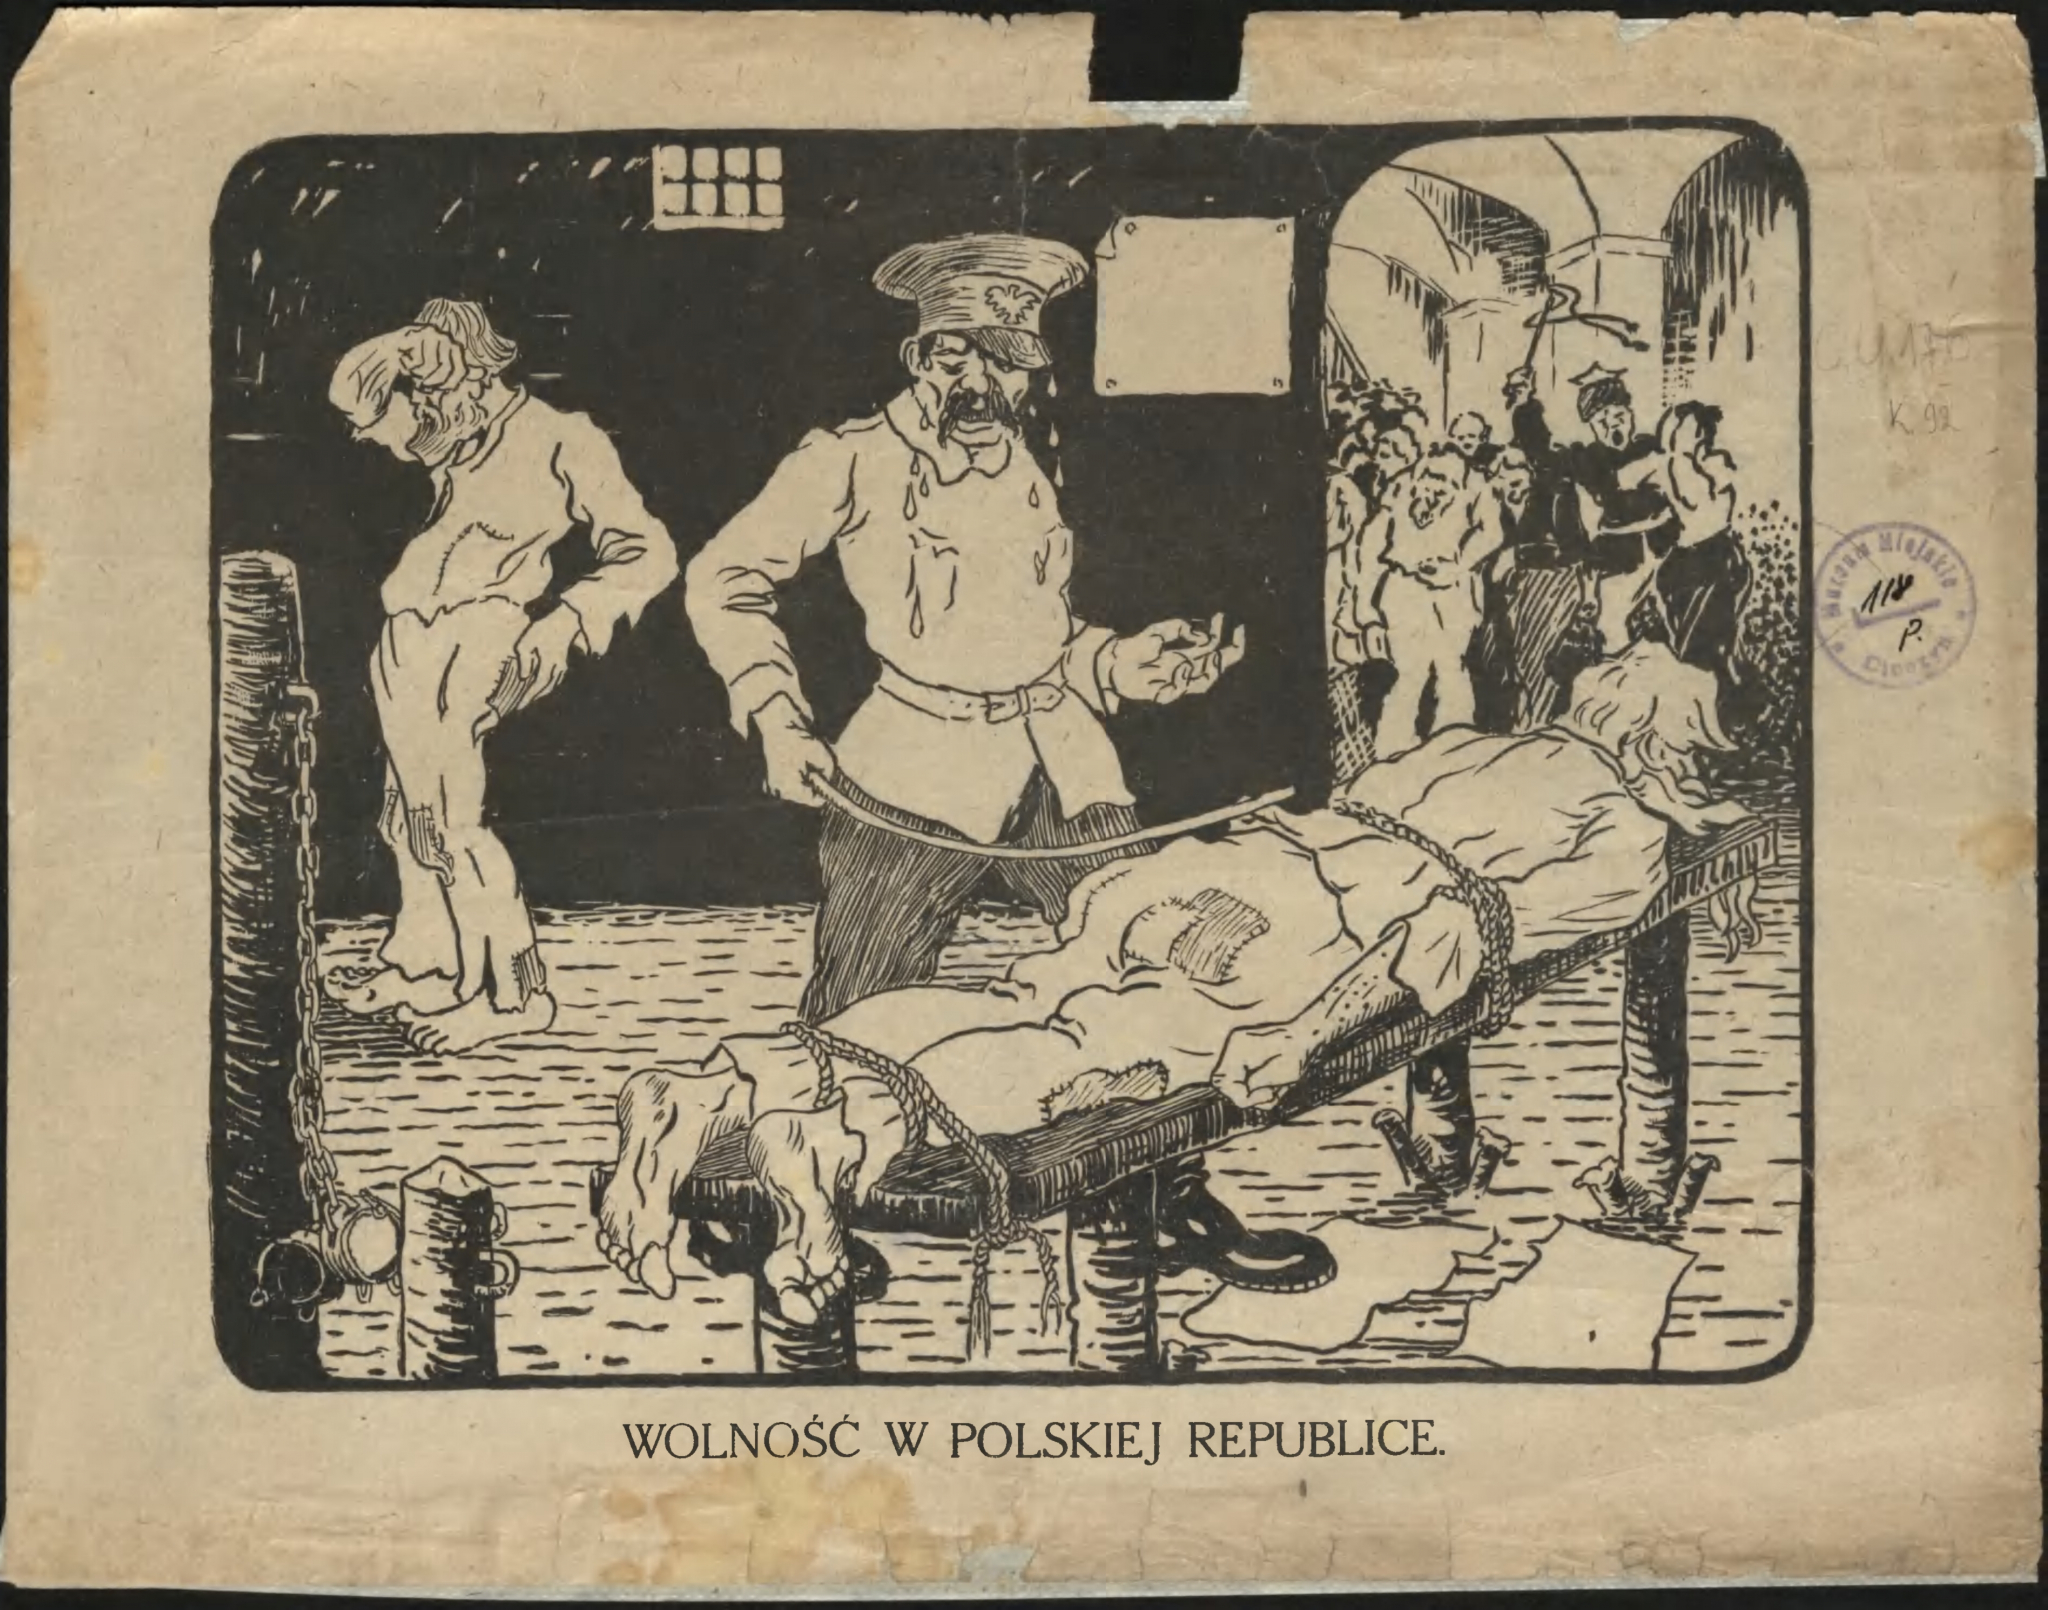 1920. Antypolska ulotka z okresu przygotowań do plebiscytu na Śląsku Cieszyńskim. Źródło: Książnica Cieszyńska